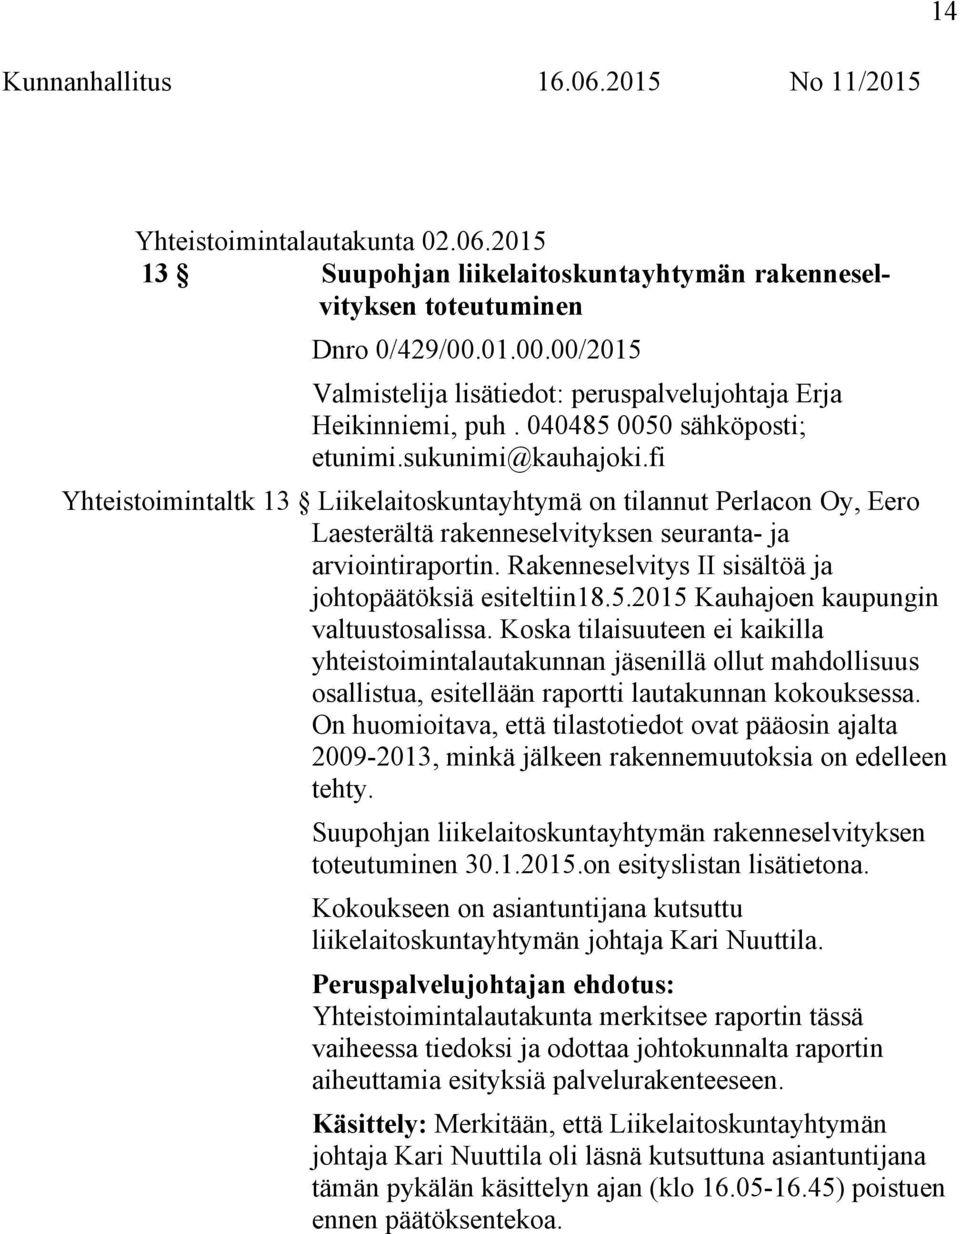 Rakenneselvitys II sisältöä ja johtopäätöksiä esiteltiin18.5.2015 Kauhajoen kaupungin valtuustosalissa.